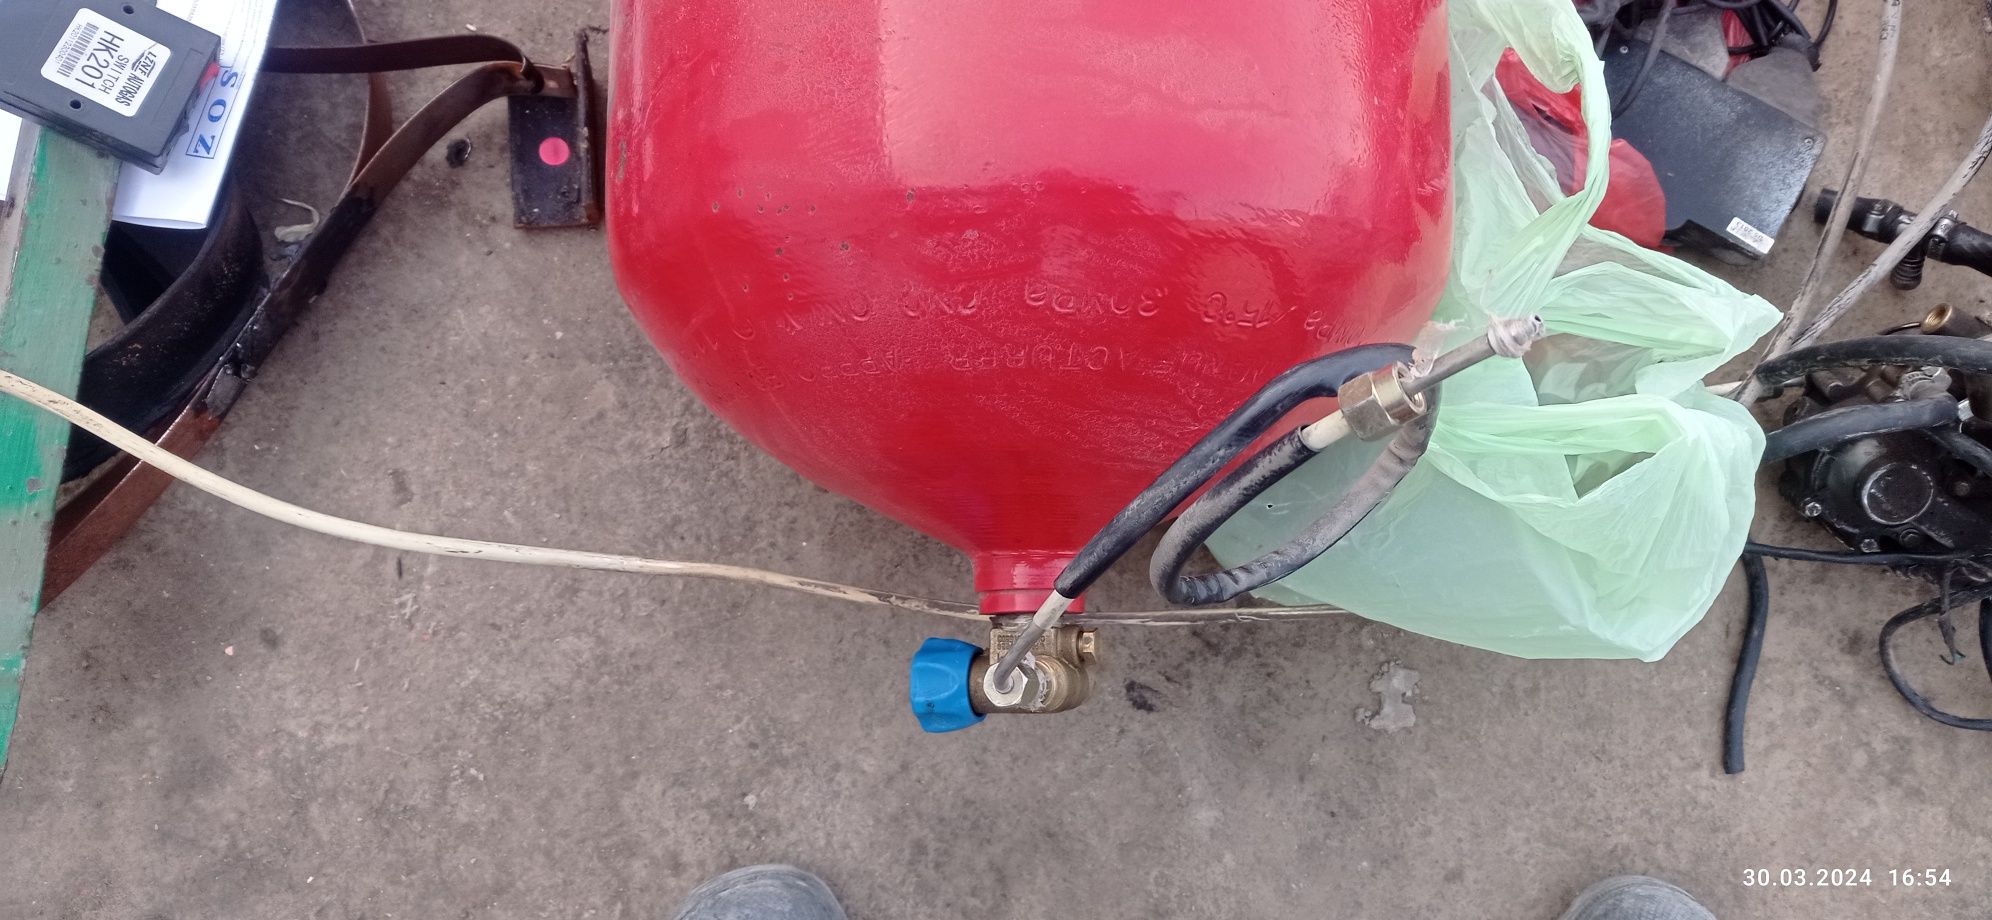 2 ta 65 litr gaz balon 2018 yil